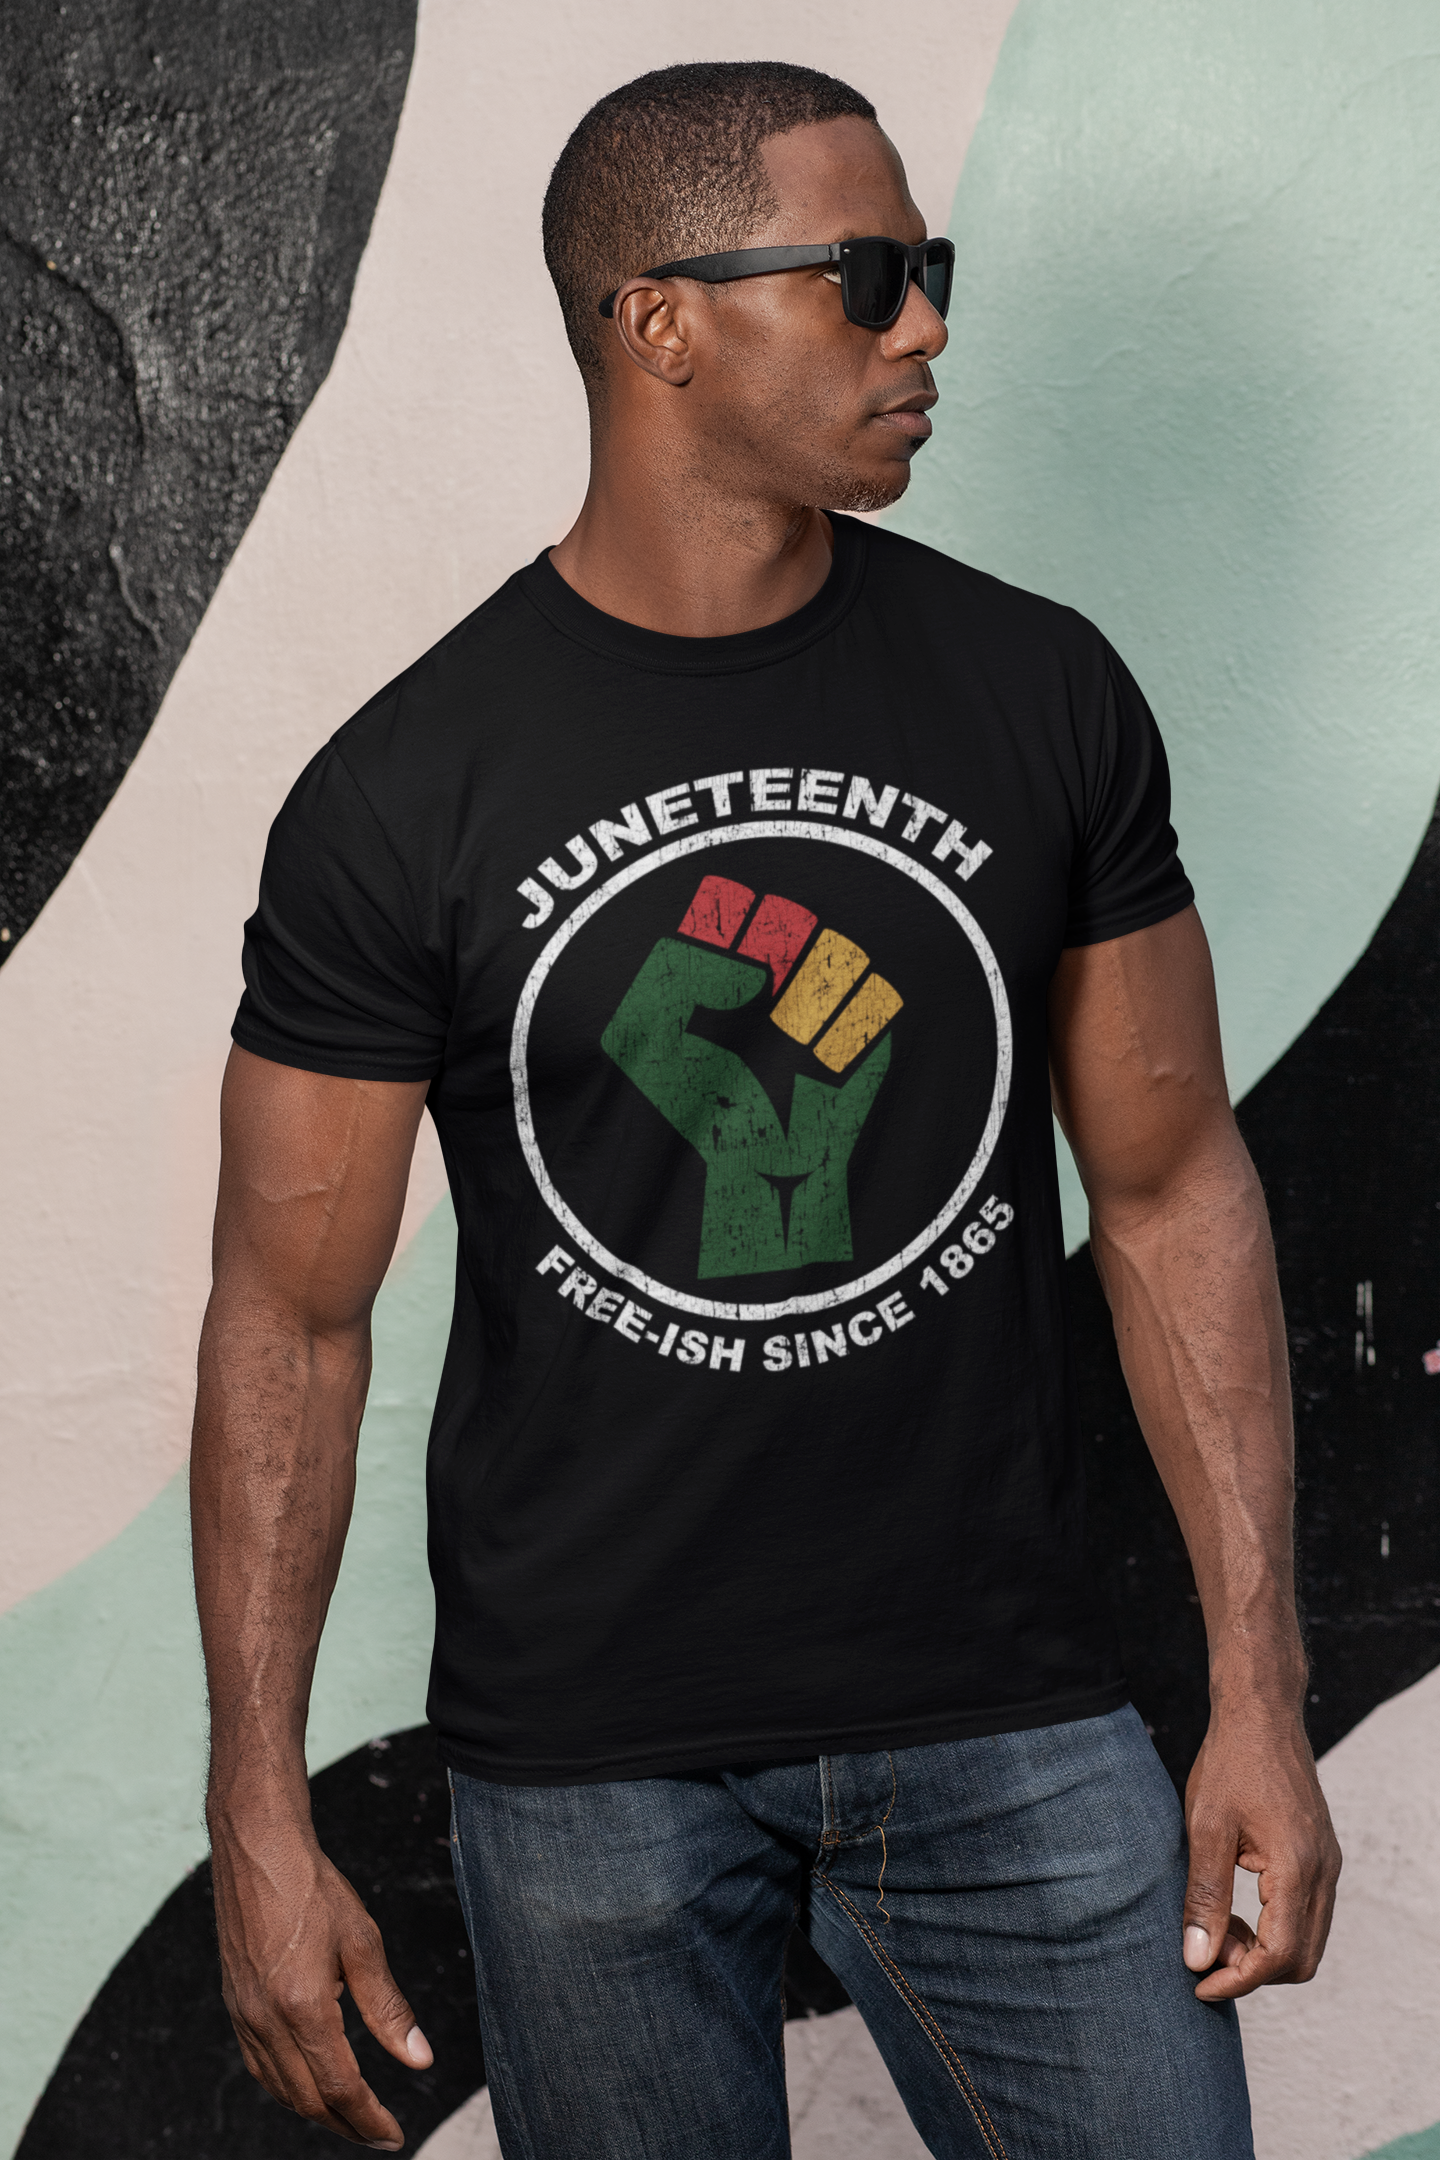 Juneteenth Shirt for Men and Women